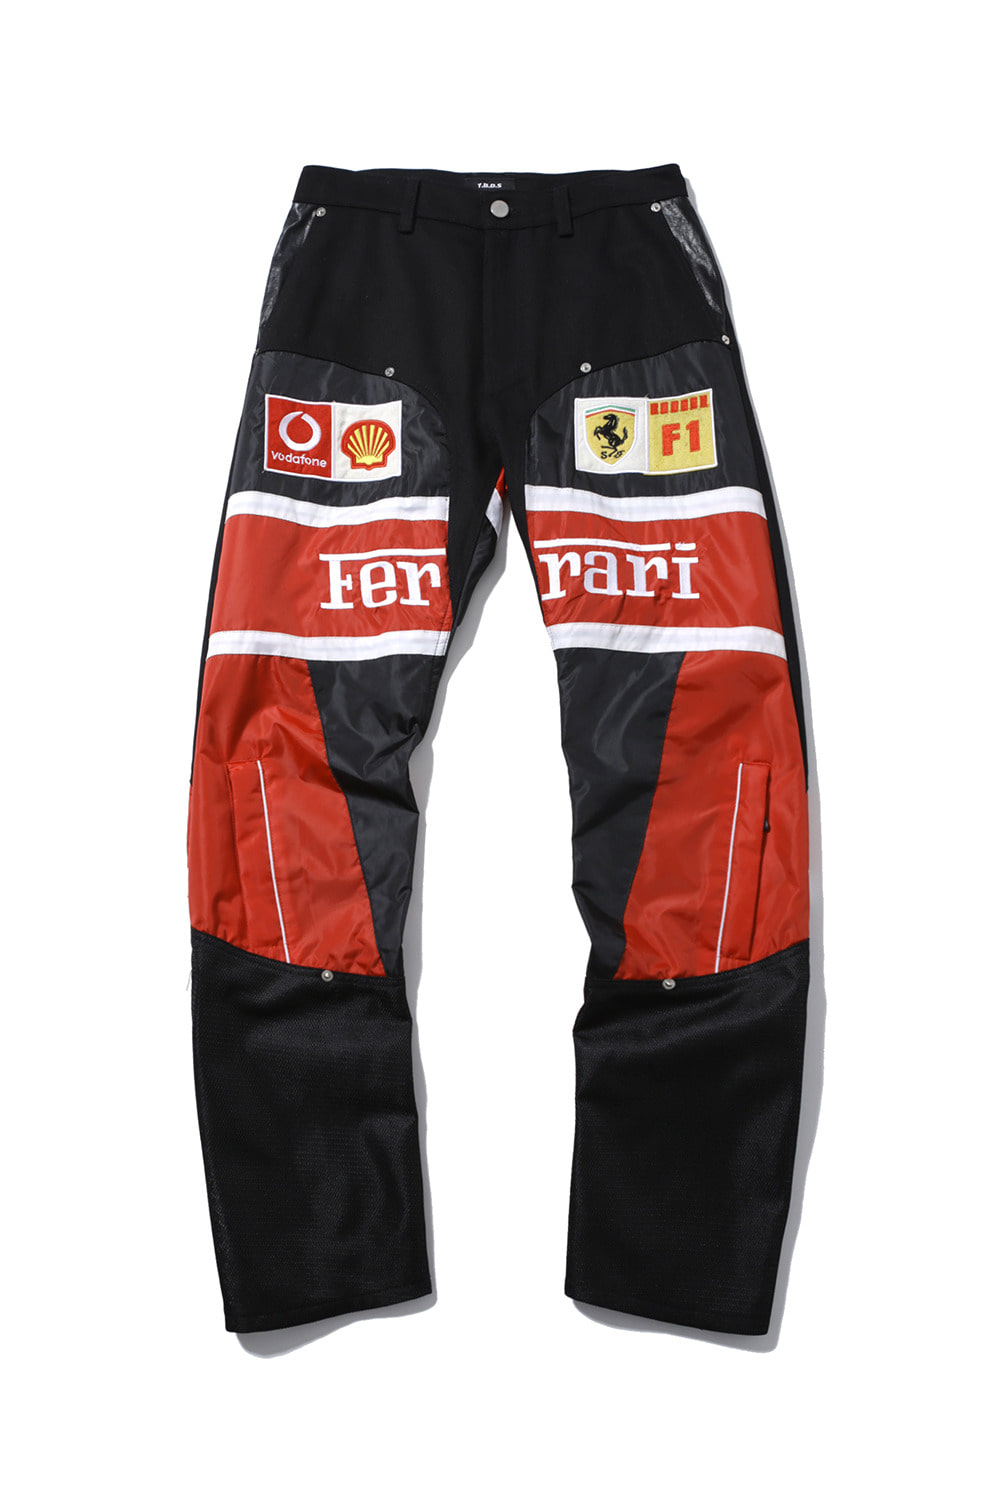 Ferrari racing detail pants